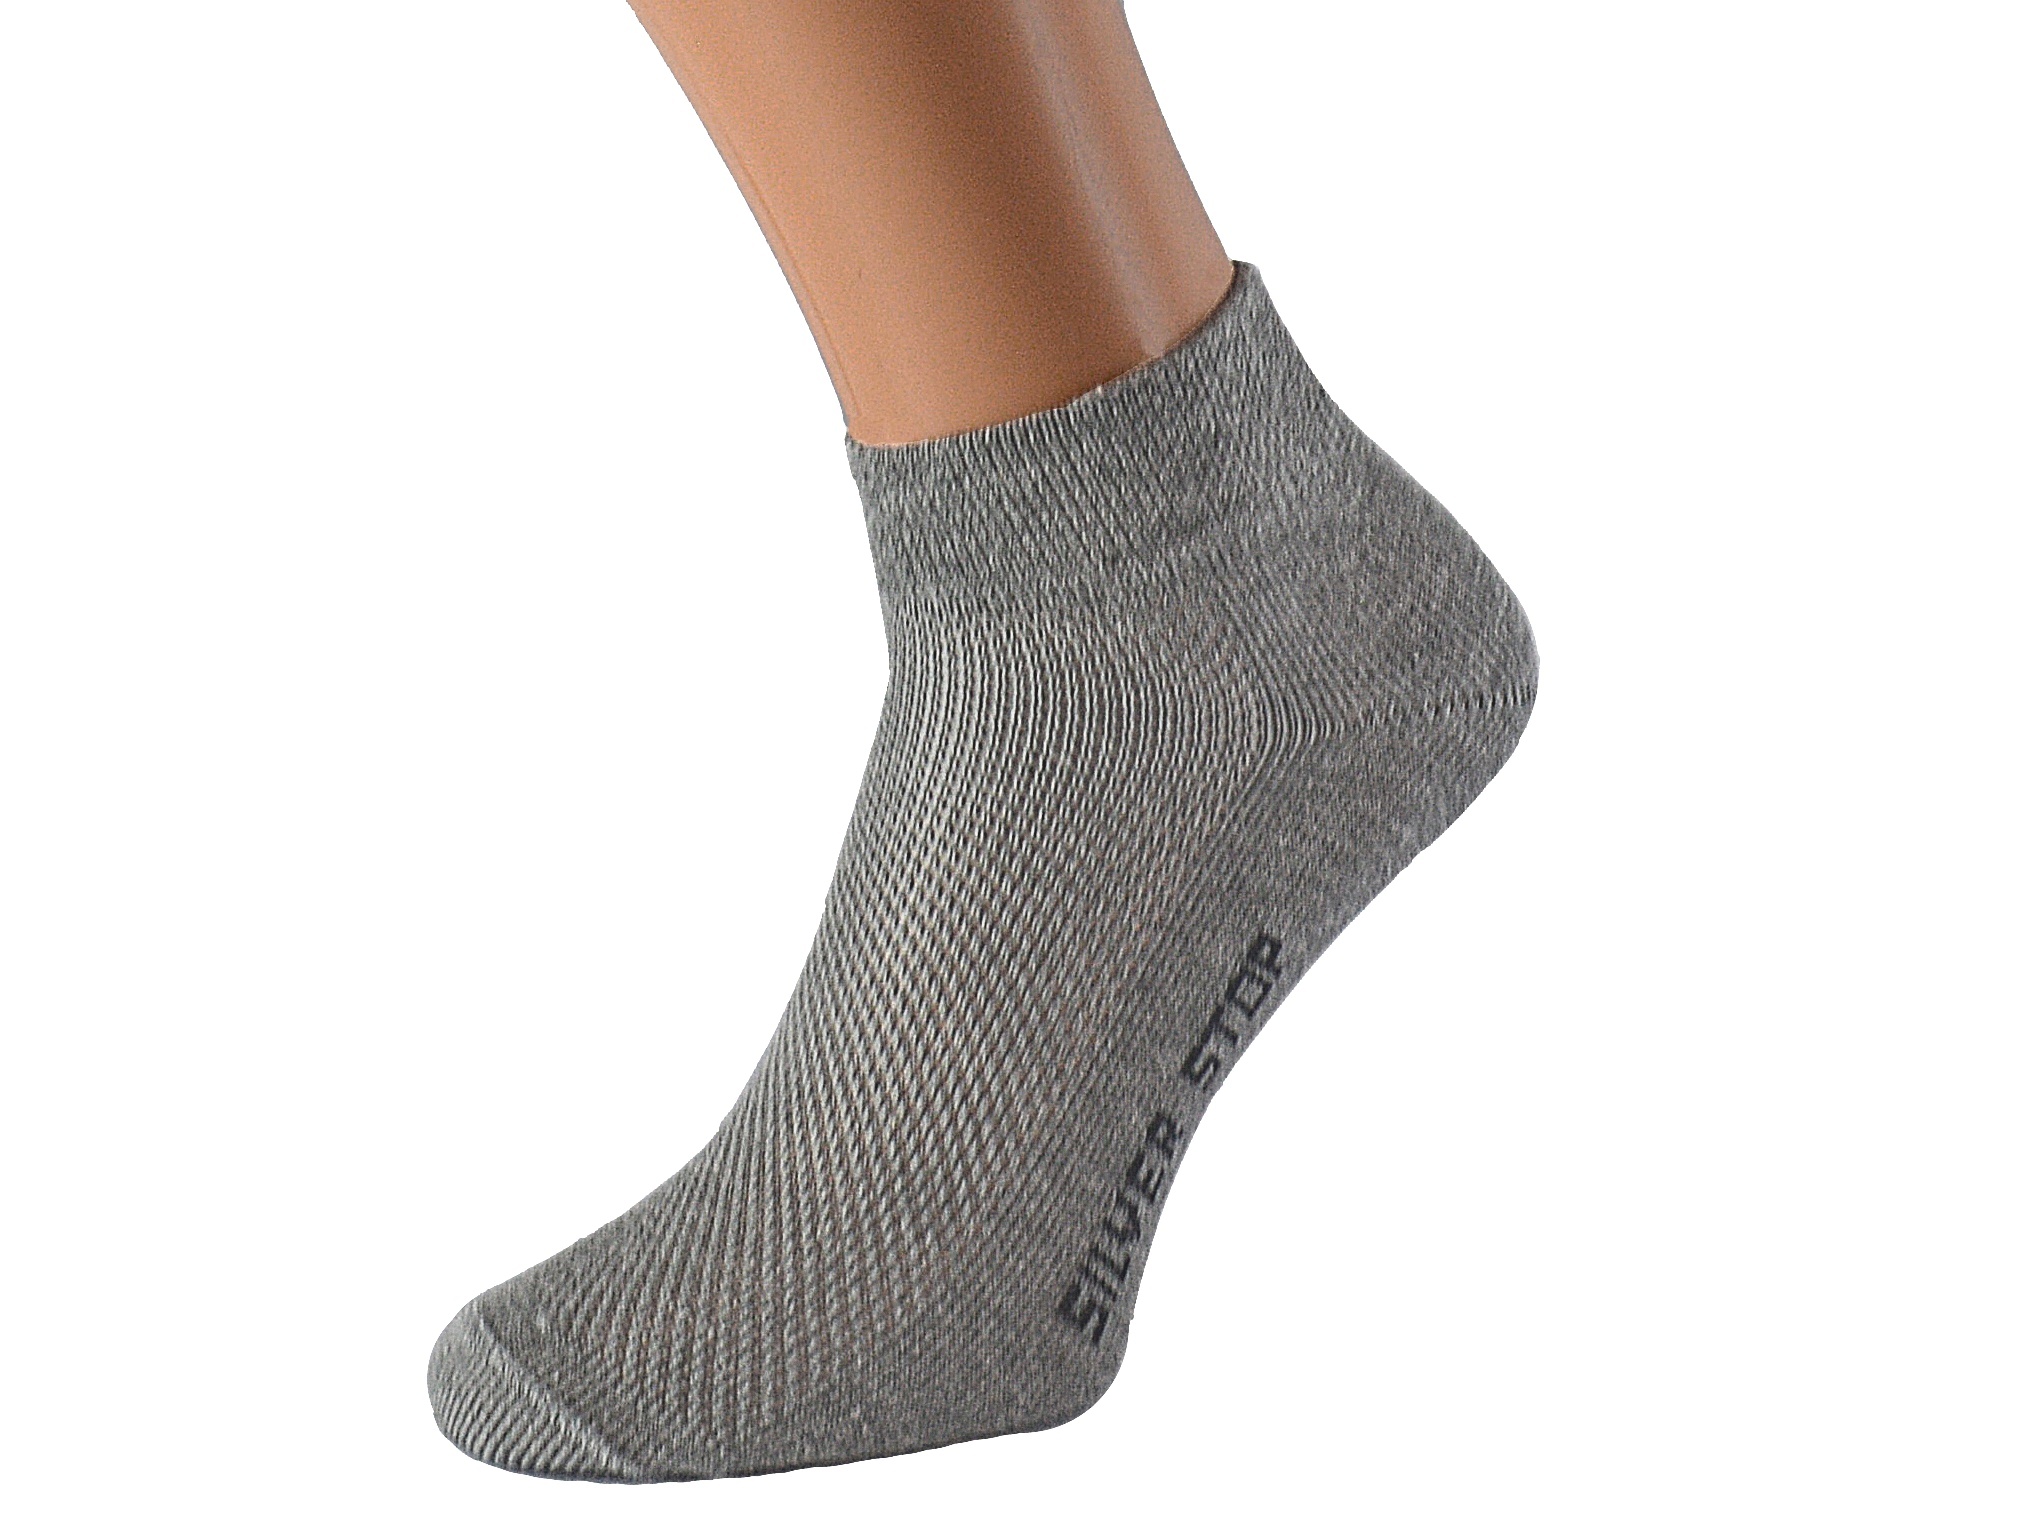 Kotníkové ponožky se stříbrem KRADANA KUKS Barva: Světle šedé, Velikost: EUR 36-38 (UK 4-5)